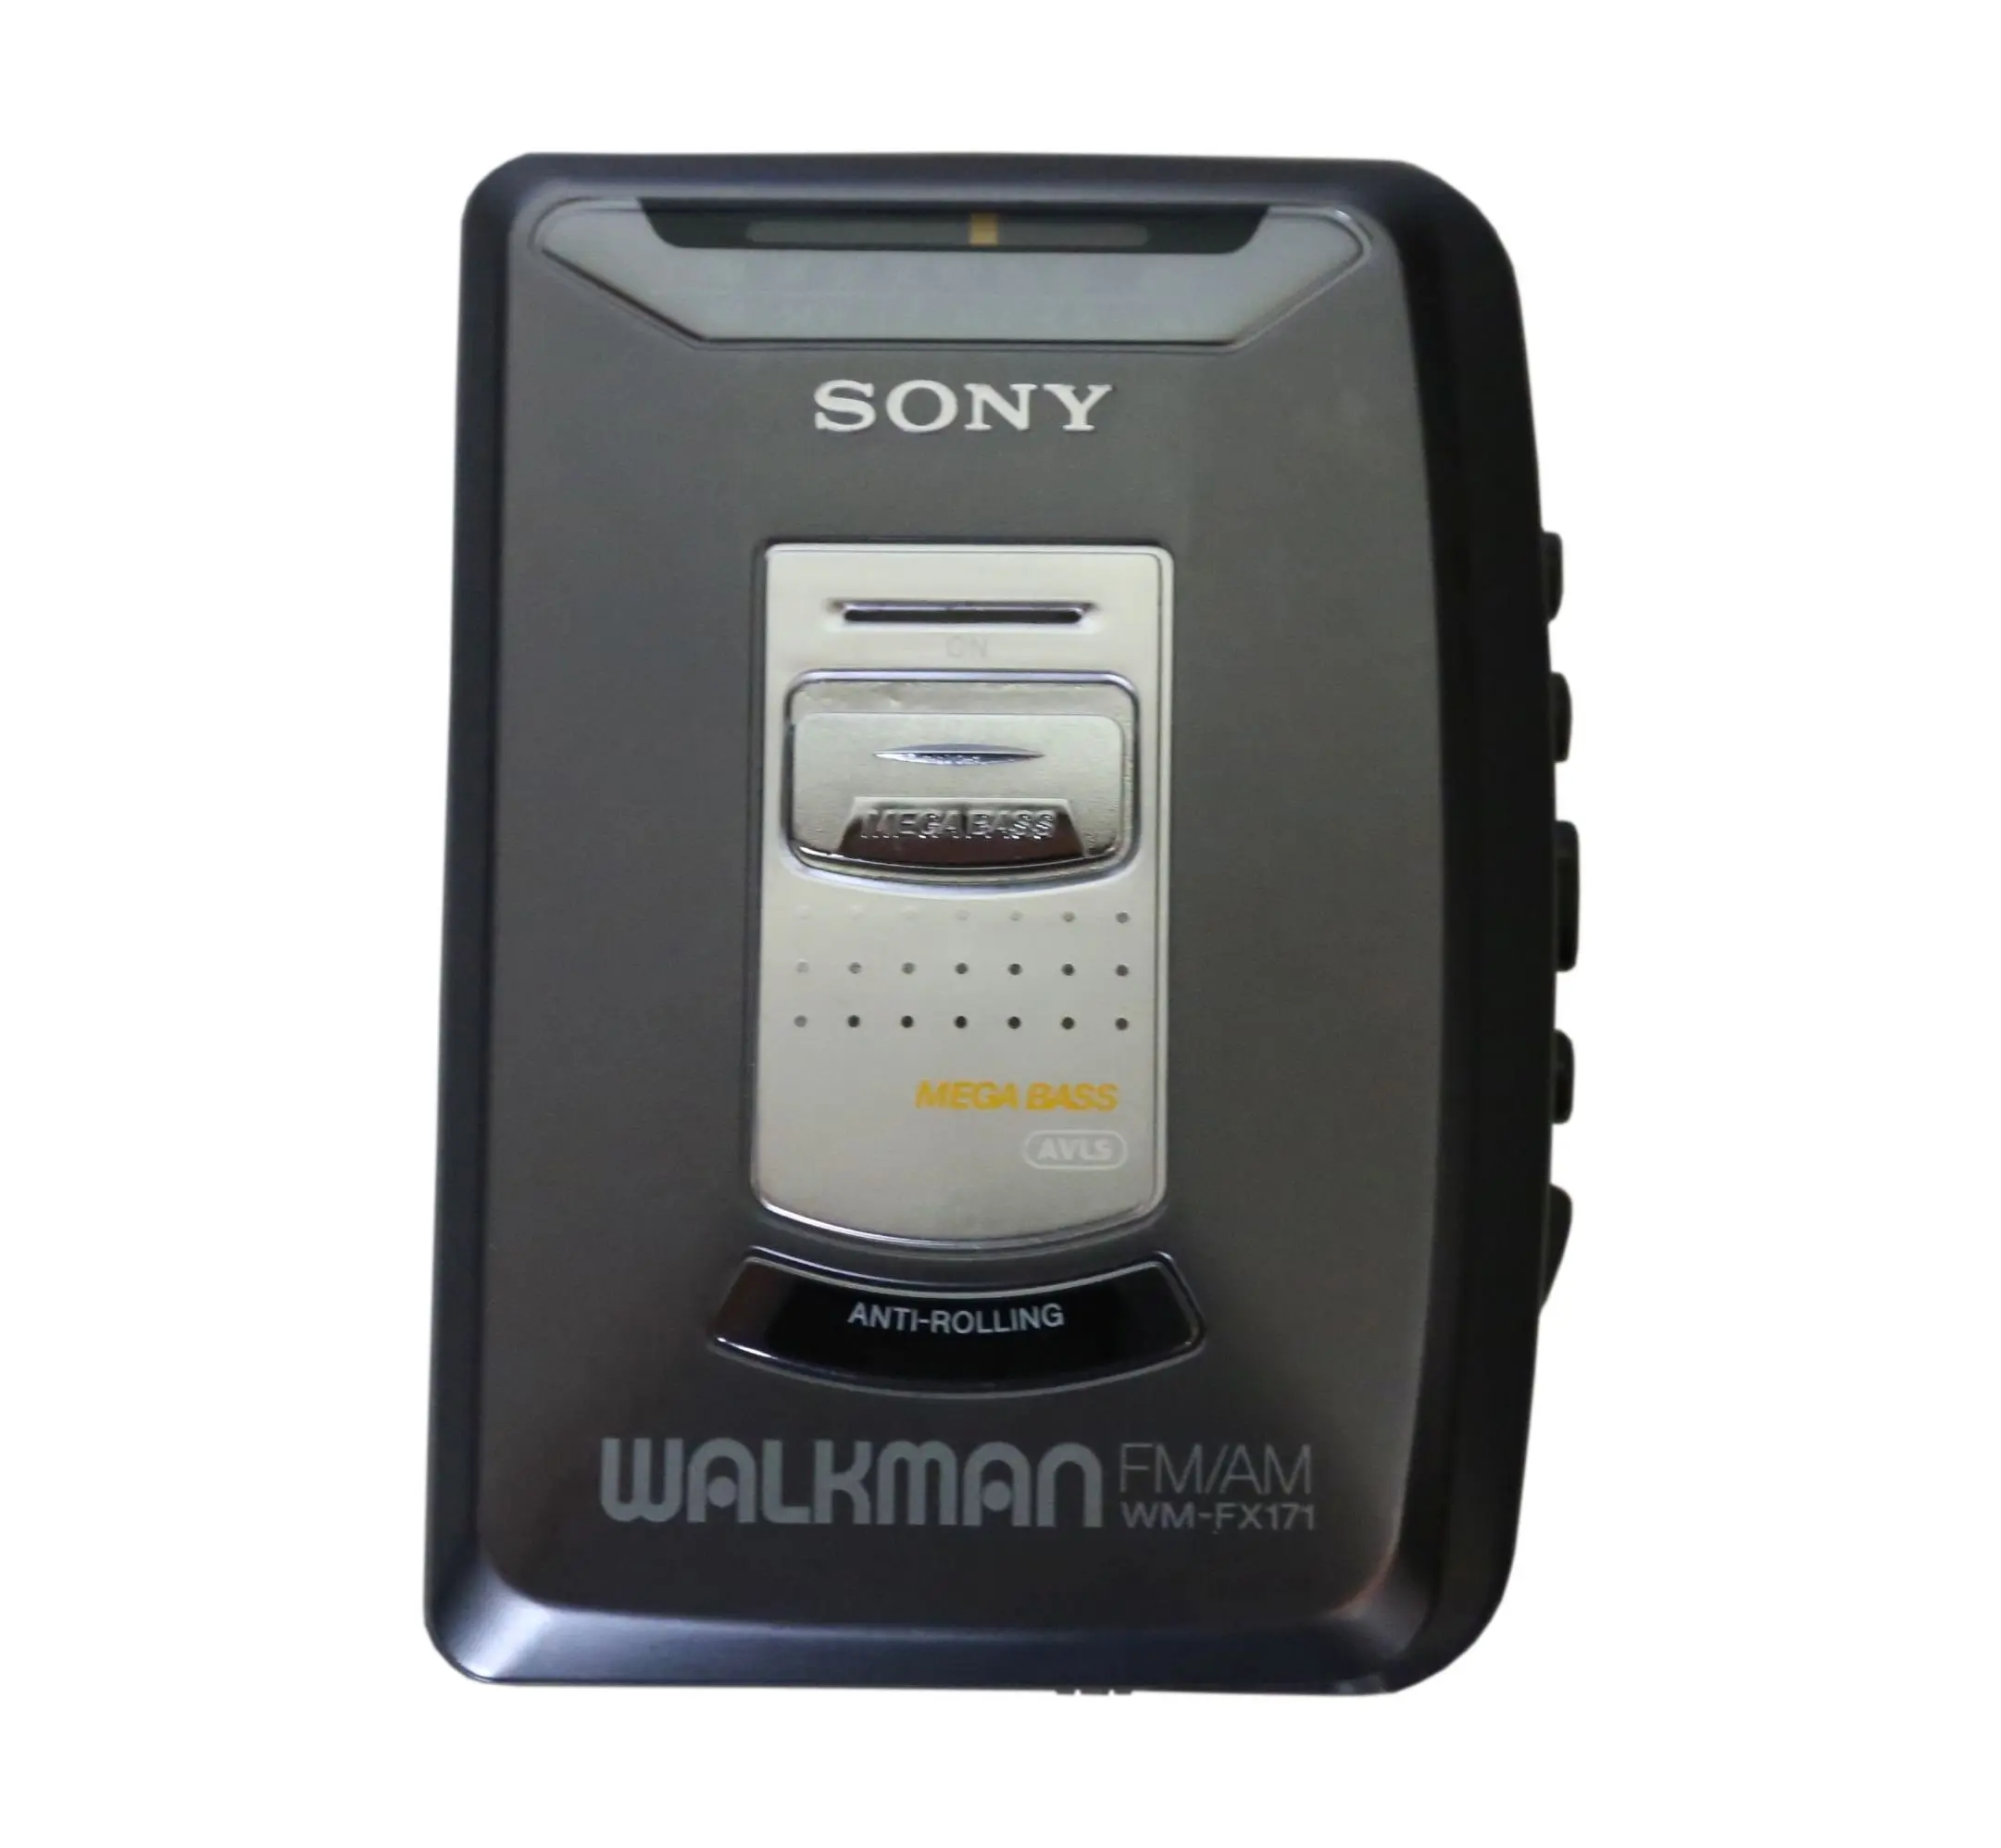 Sony walkman кассетный купить. Sony Walkman WM-fx171. Sony Walkman WM FX. Sony Walkman Player кассетный. Sony плеер кассетный Велкман.